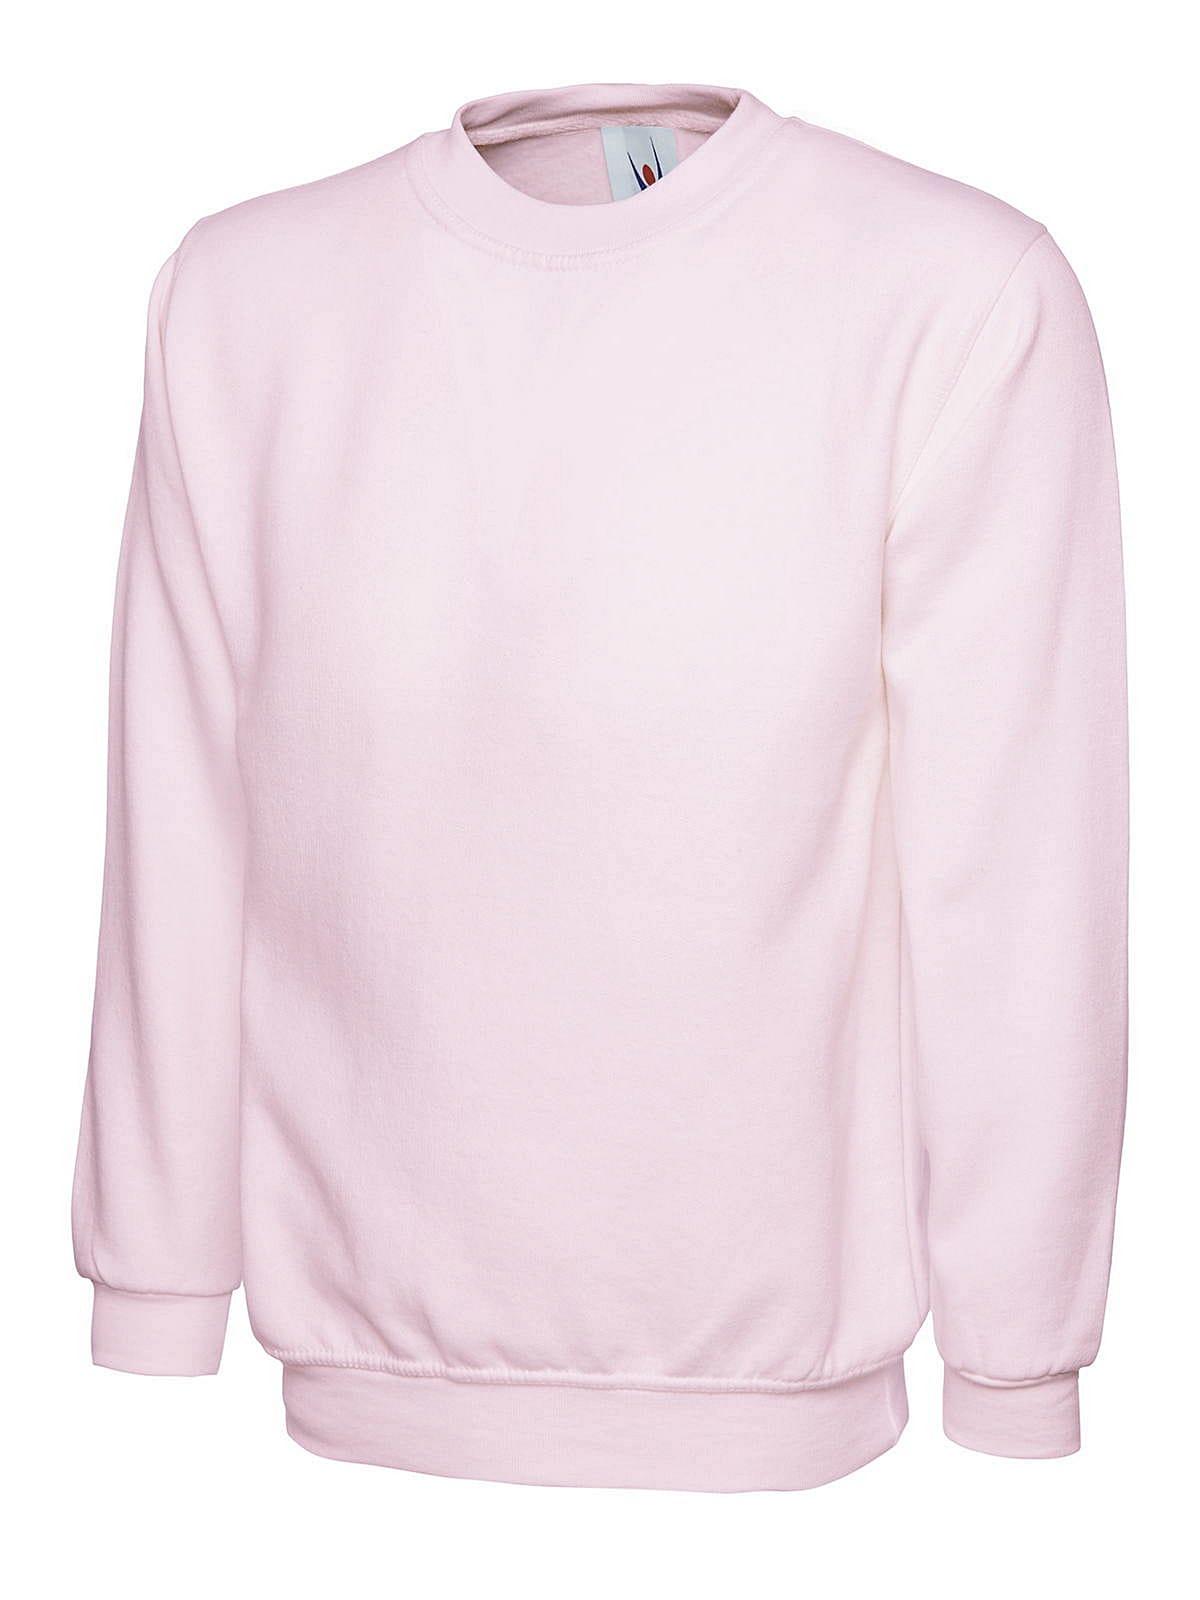 Uneek 300GSM Classic Sweatshirt in Pink (Product Code: UC203)